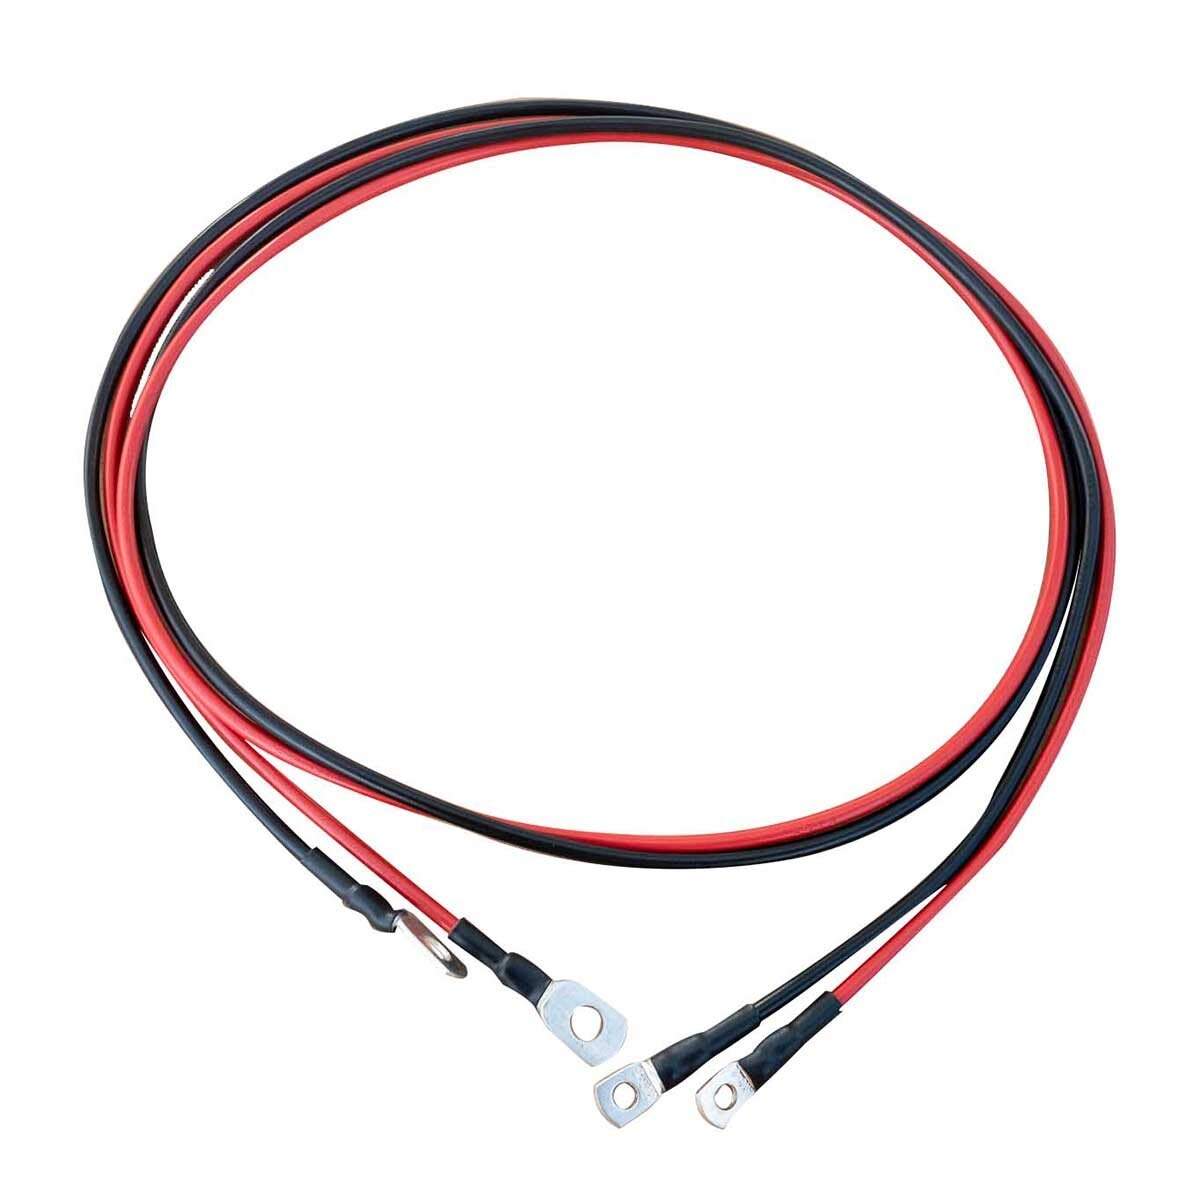 ECTIVE Wechselrichter-Kabel – M6/M8, 1m, rot/schwarz, Kupfer, 6 mm² - Batteriekabel, Kabel-Satz, Kabel für Wechselrichter 300W mit Ringösen für 12V Batterie, Versorgungsbatterie, Autobatterie